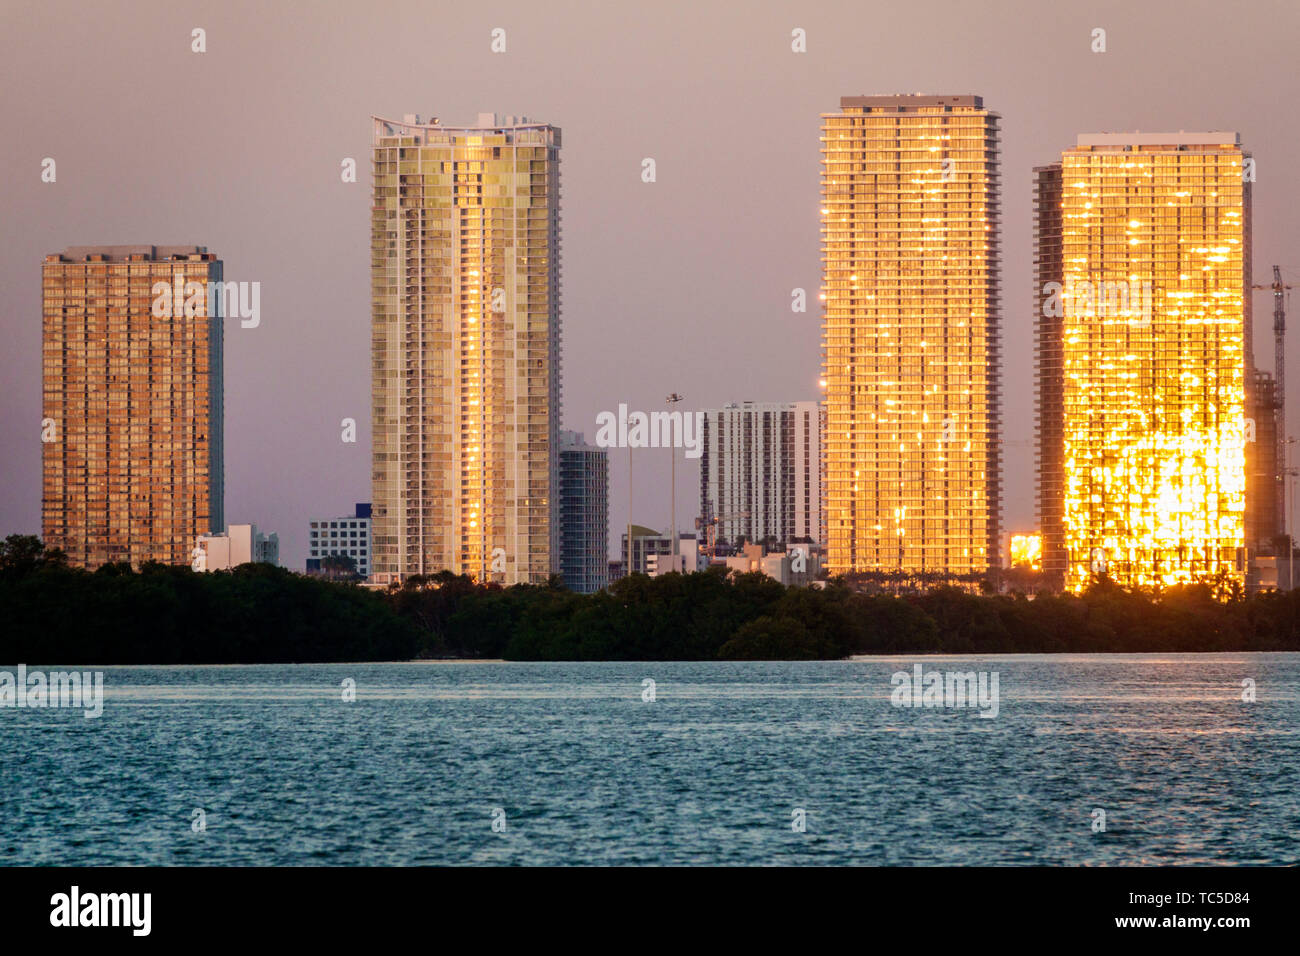 Miami Florida, Edgewater, Biscayne Bay, grattacieli grattacieli di alto livello edificio edifici residenziali di lusso, condominio appartamenti residenziali Foto Stock